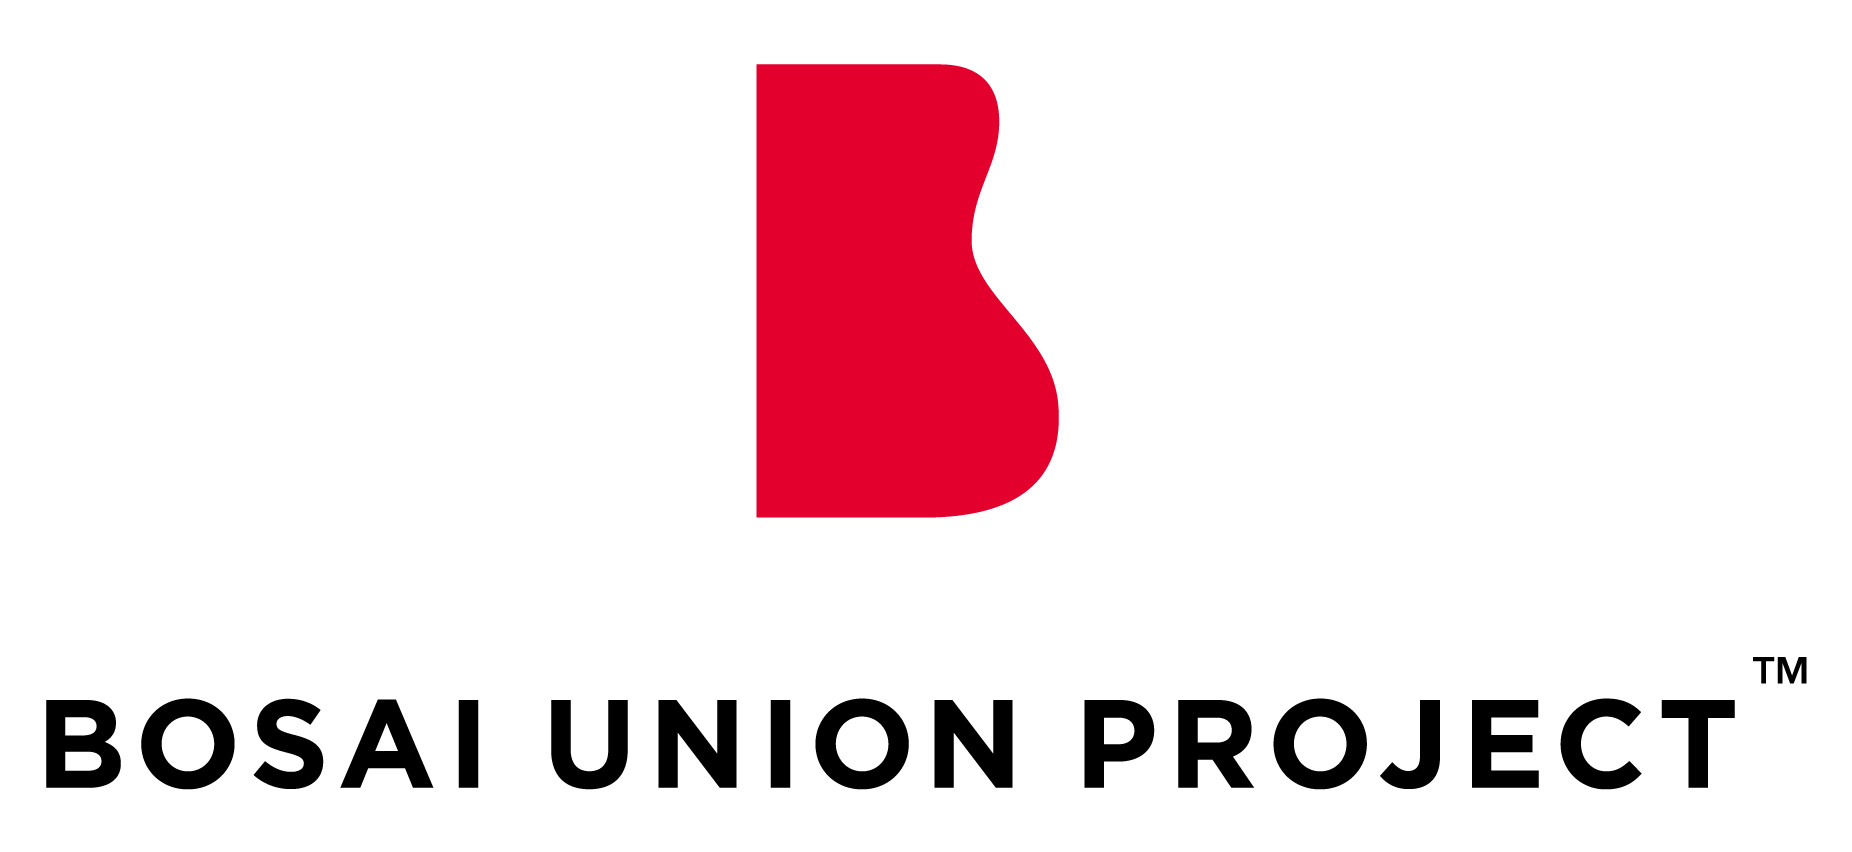 Bosai Union Project